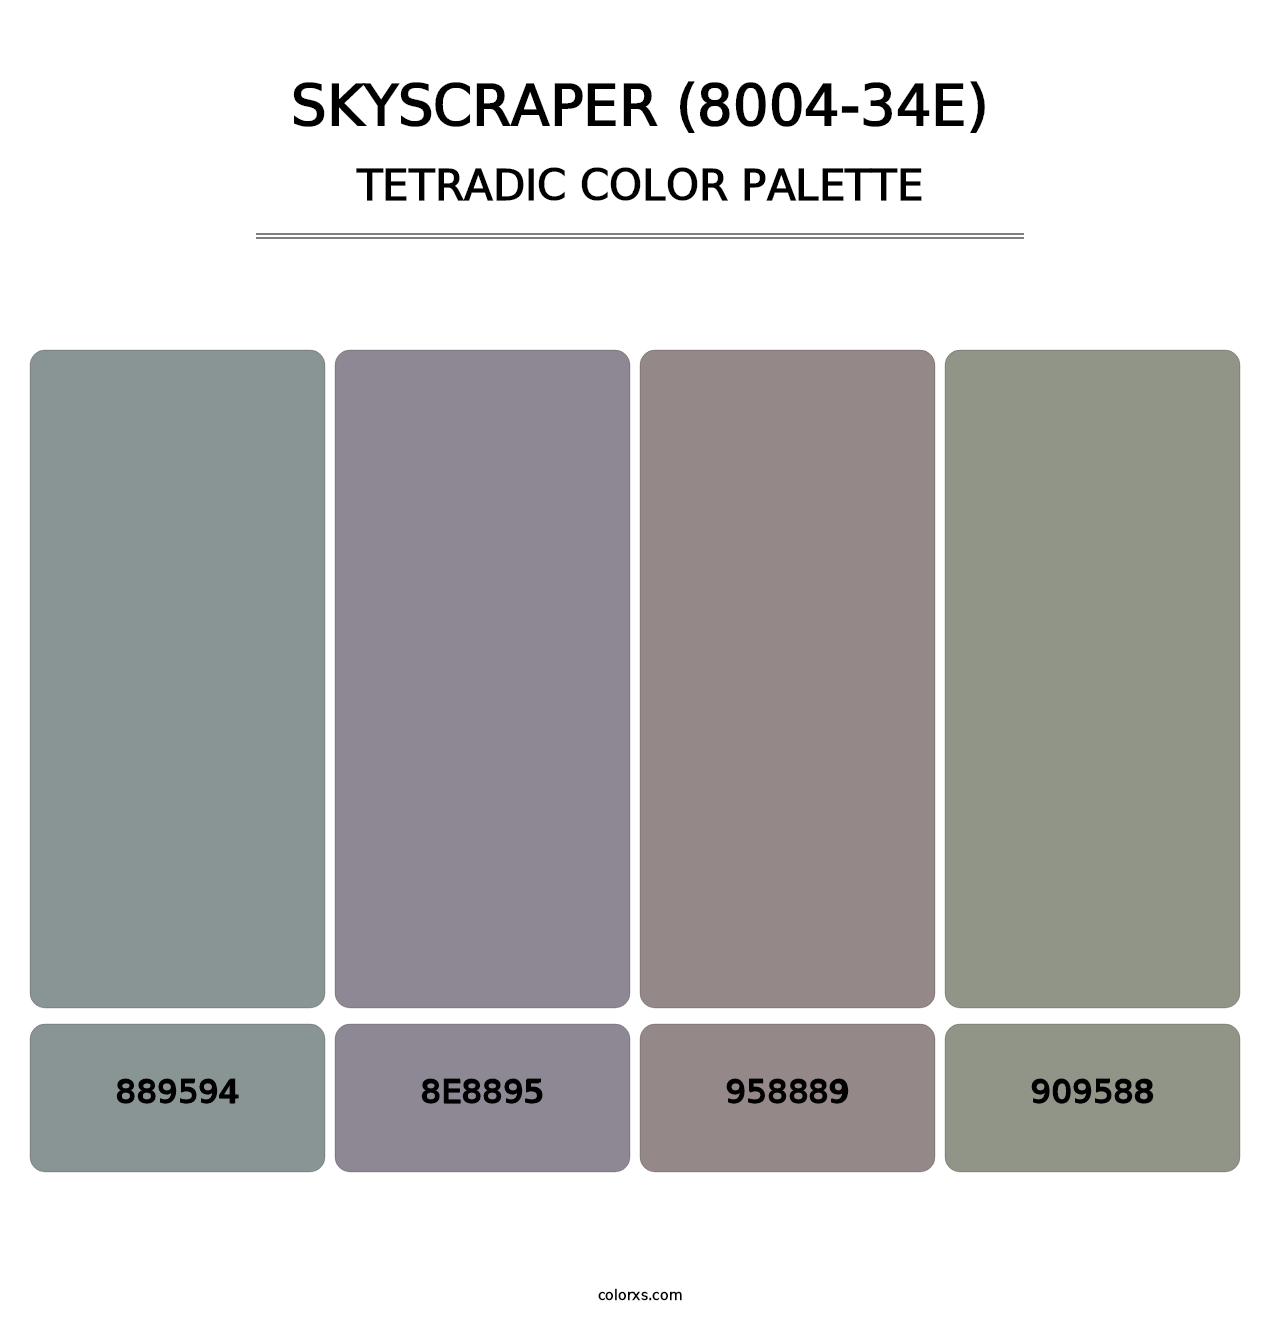 Skyscraper (8004-34E) - Tetradic Color Palette